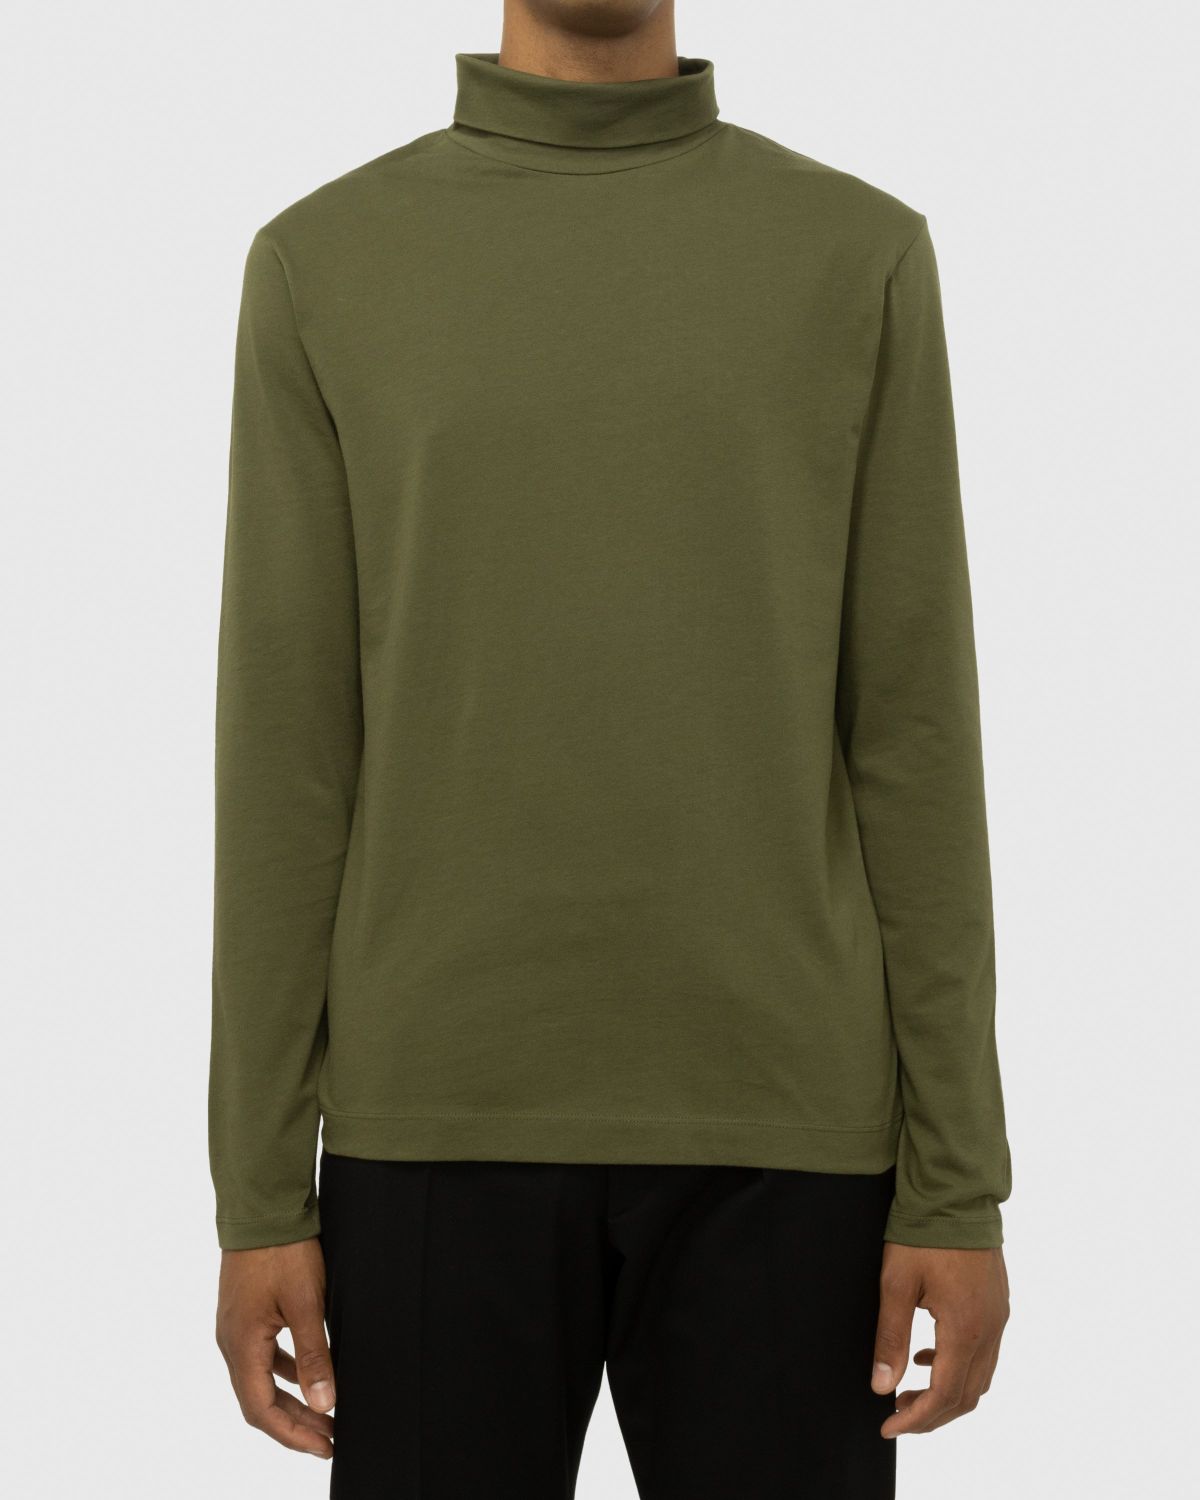 Dries van Noten – Heyzo Turtleneck Jersey Shirt Green - Sweats - Green - Image 4